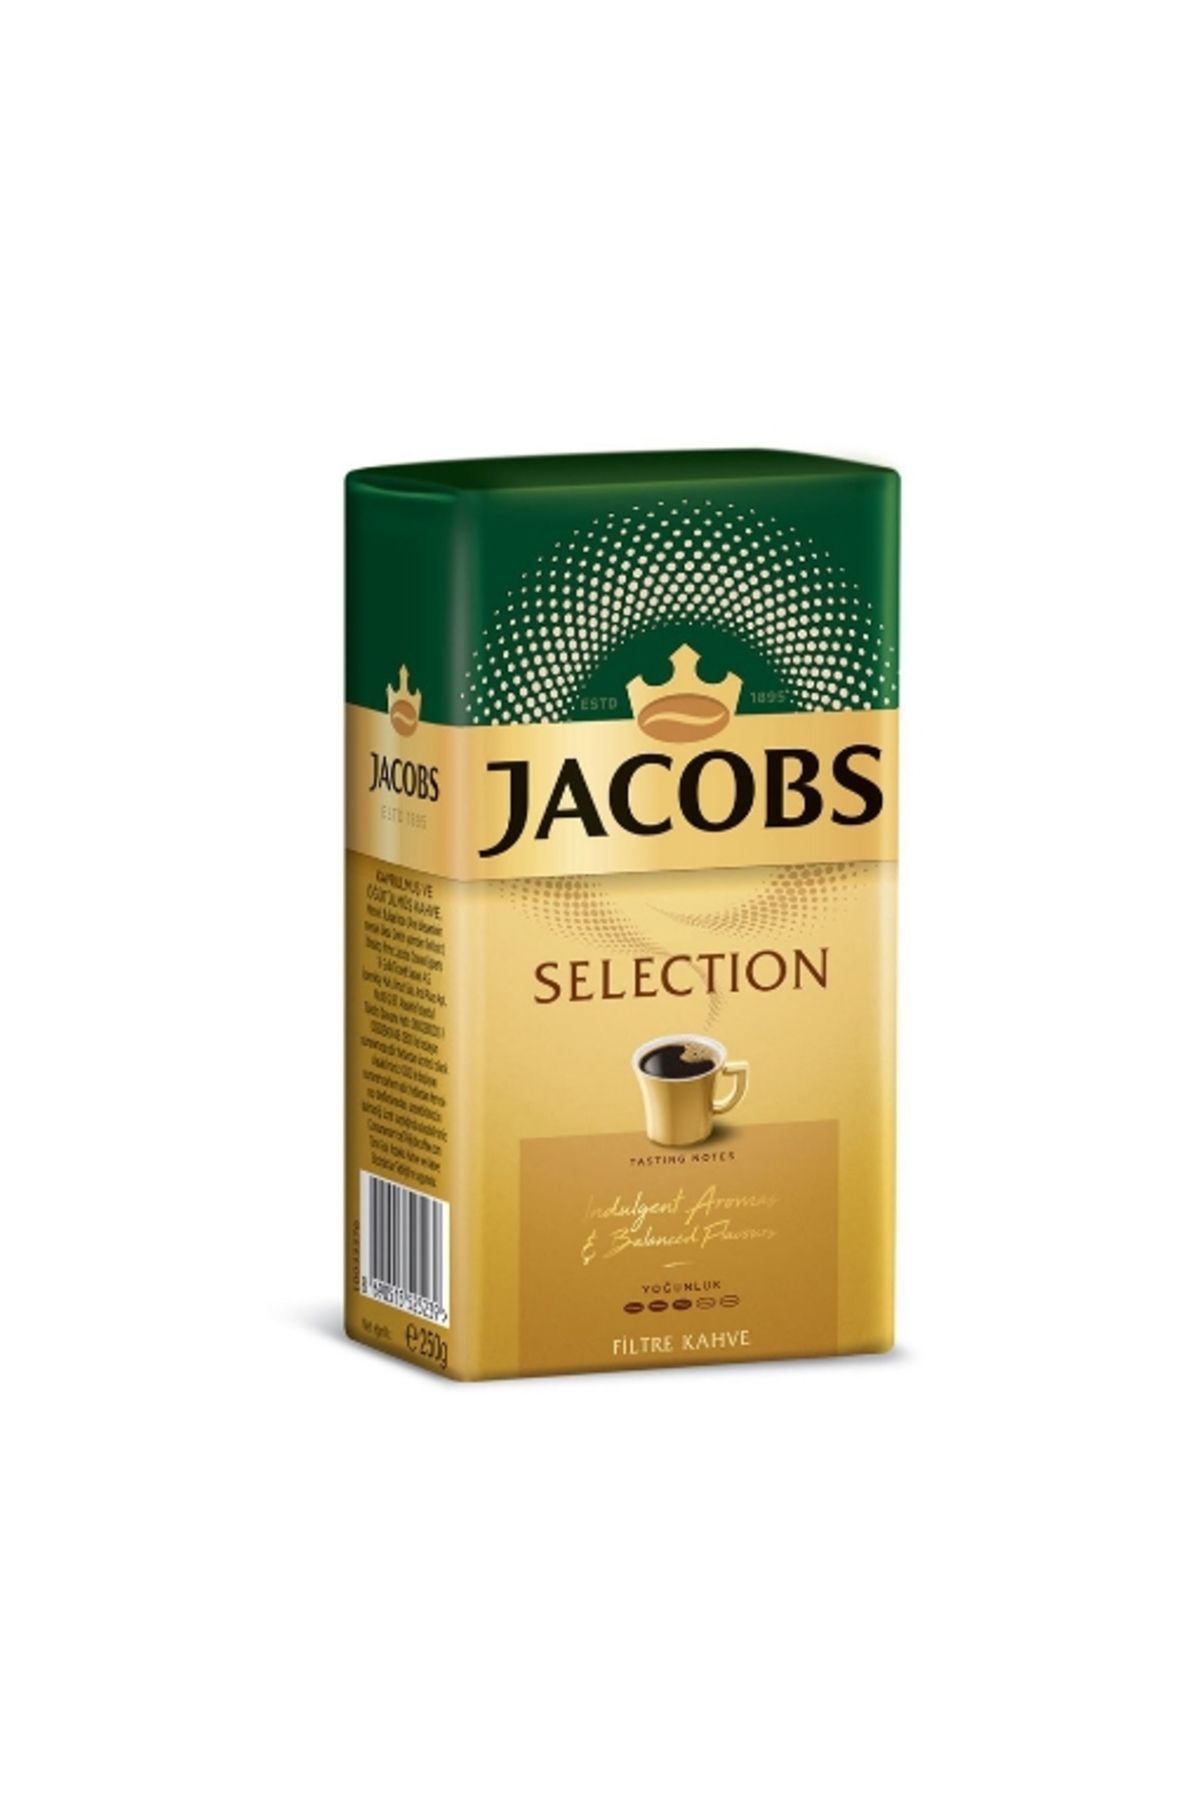 Jacobs Selection Filtre Kahve Kutu 250 Gr. (24'lü)